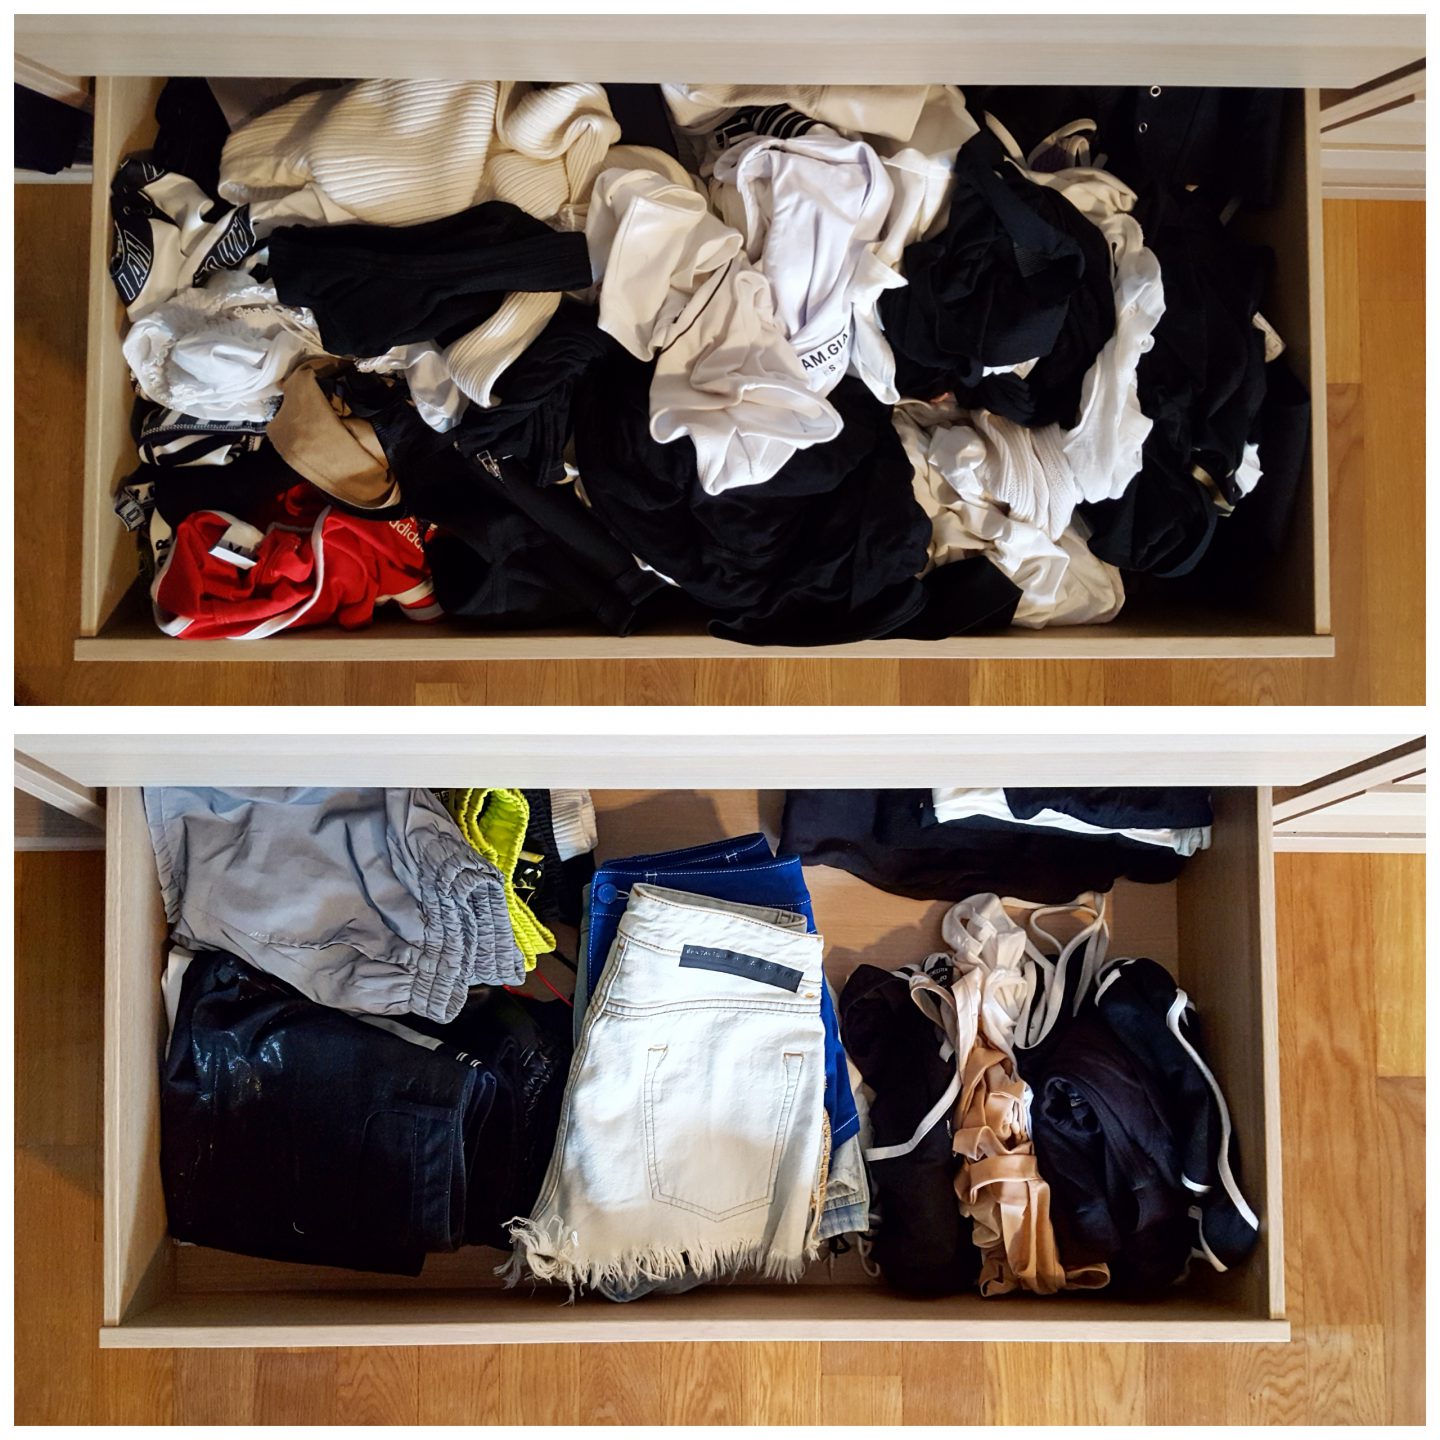 Kleiderschrank organisieren: ein Vorher-Nachher-Vergleich von Schubladen